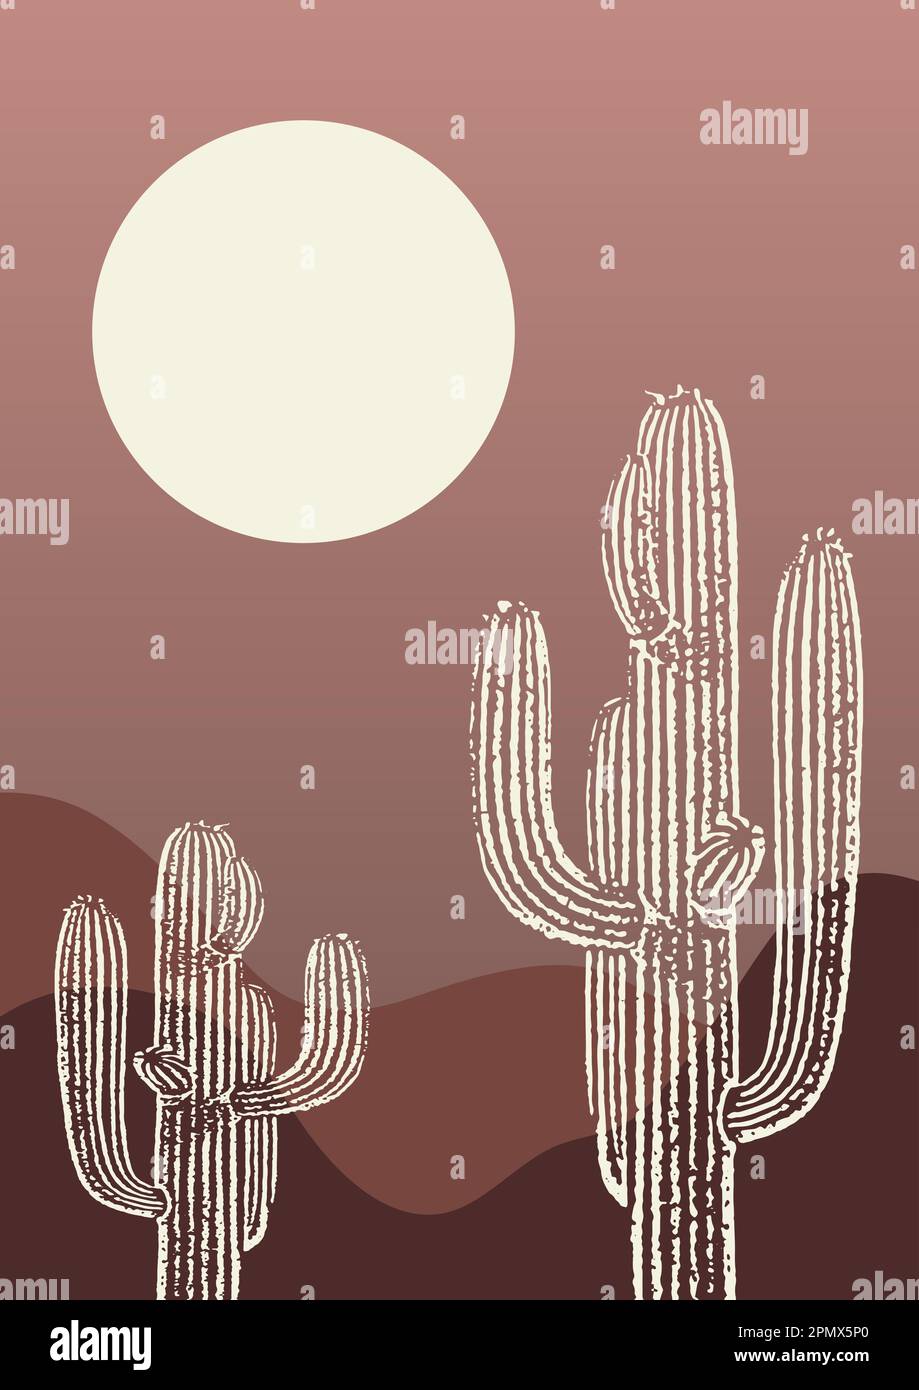 Poster zeitgenössischer ästhetischer Kaktus in Wüstenlandschaft. Stock Vektor